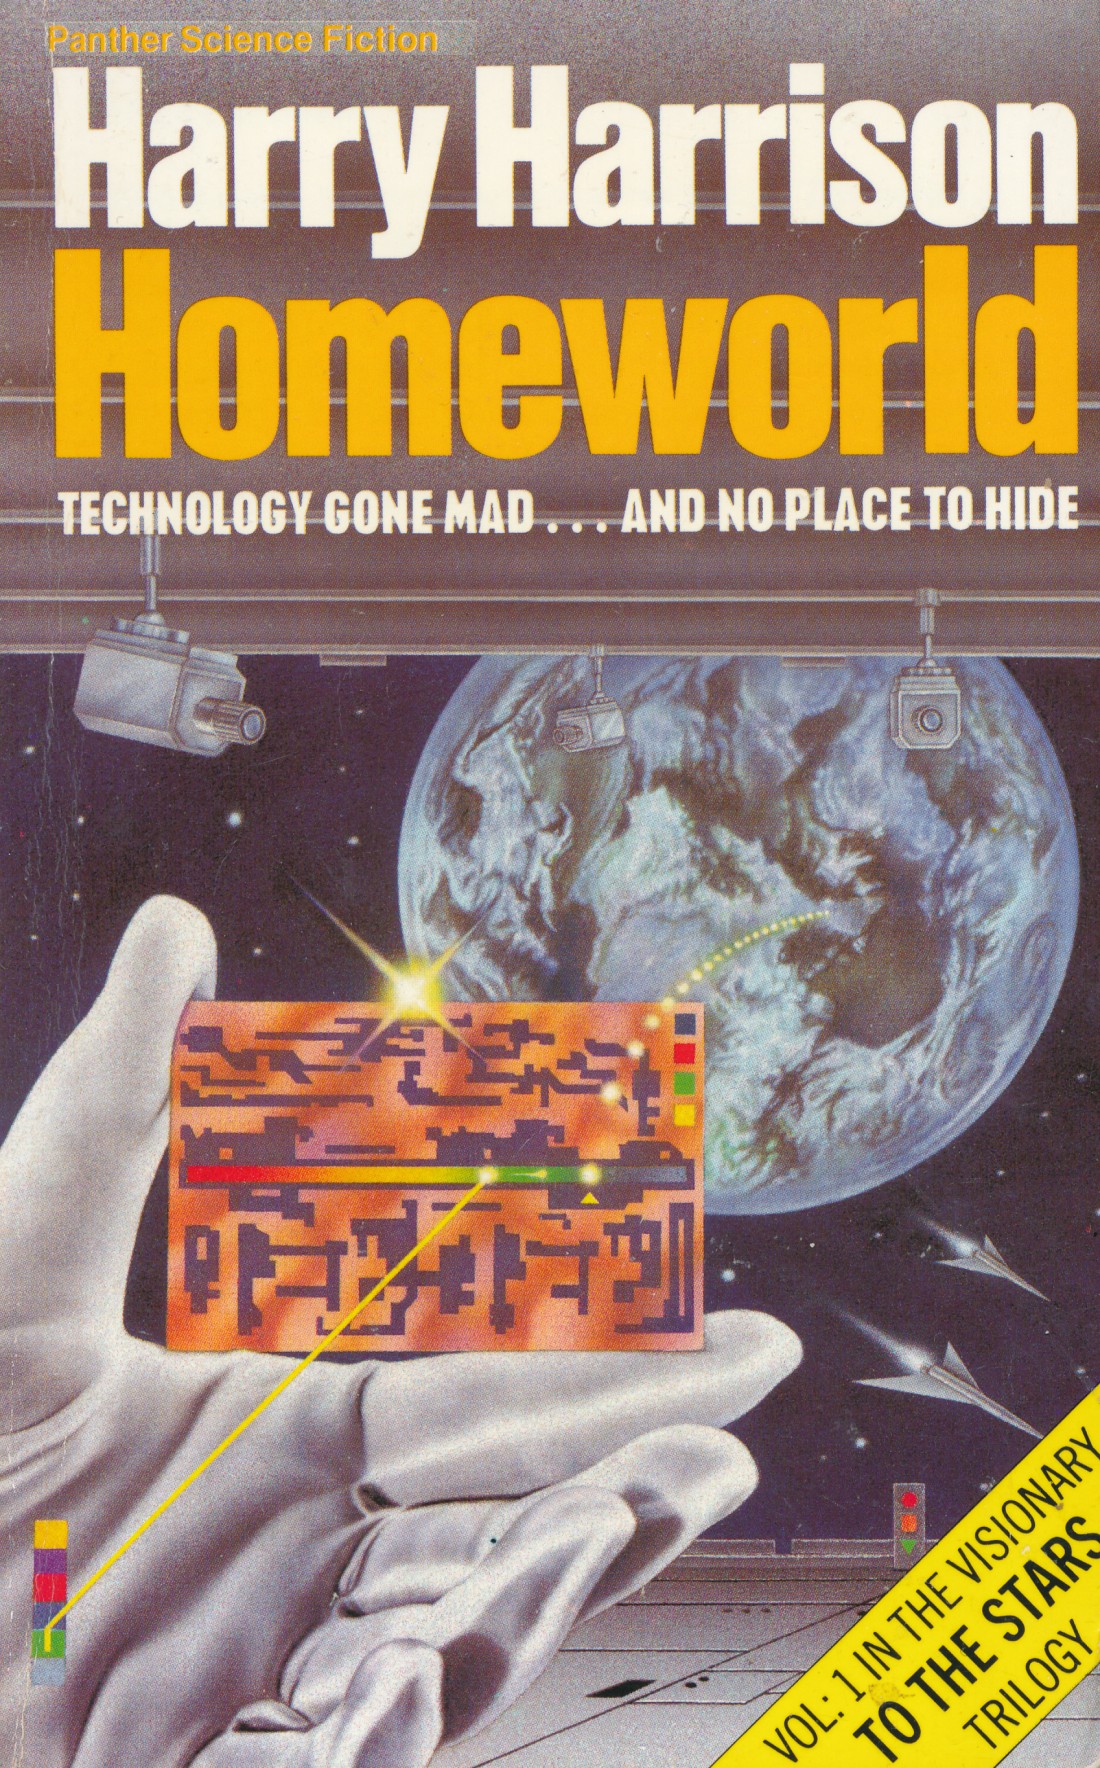 «Мир Родины» (Homeworld) (1980)